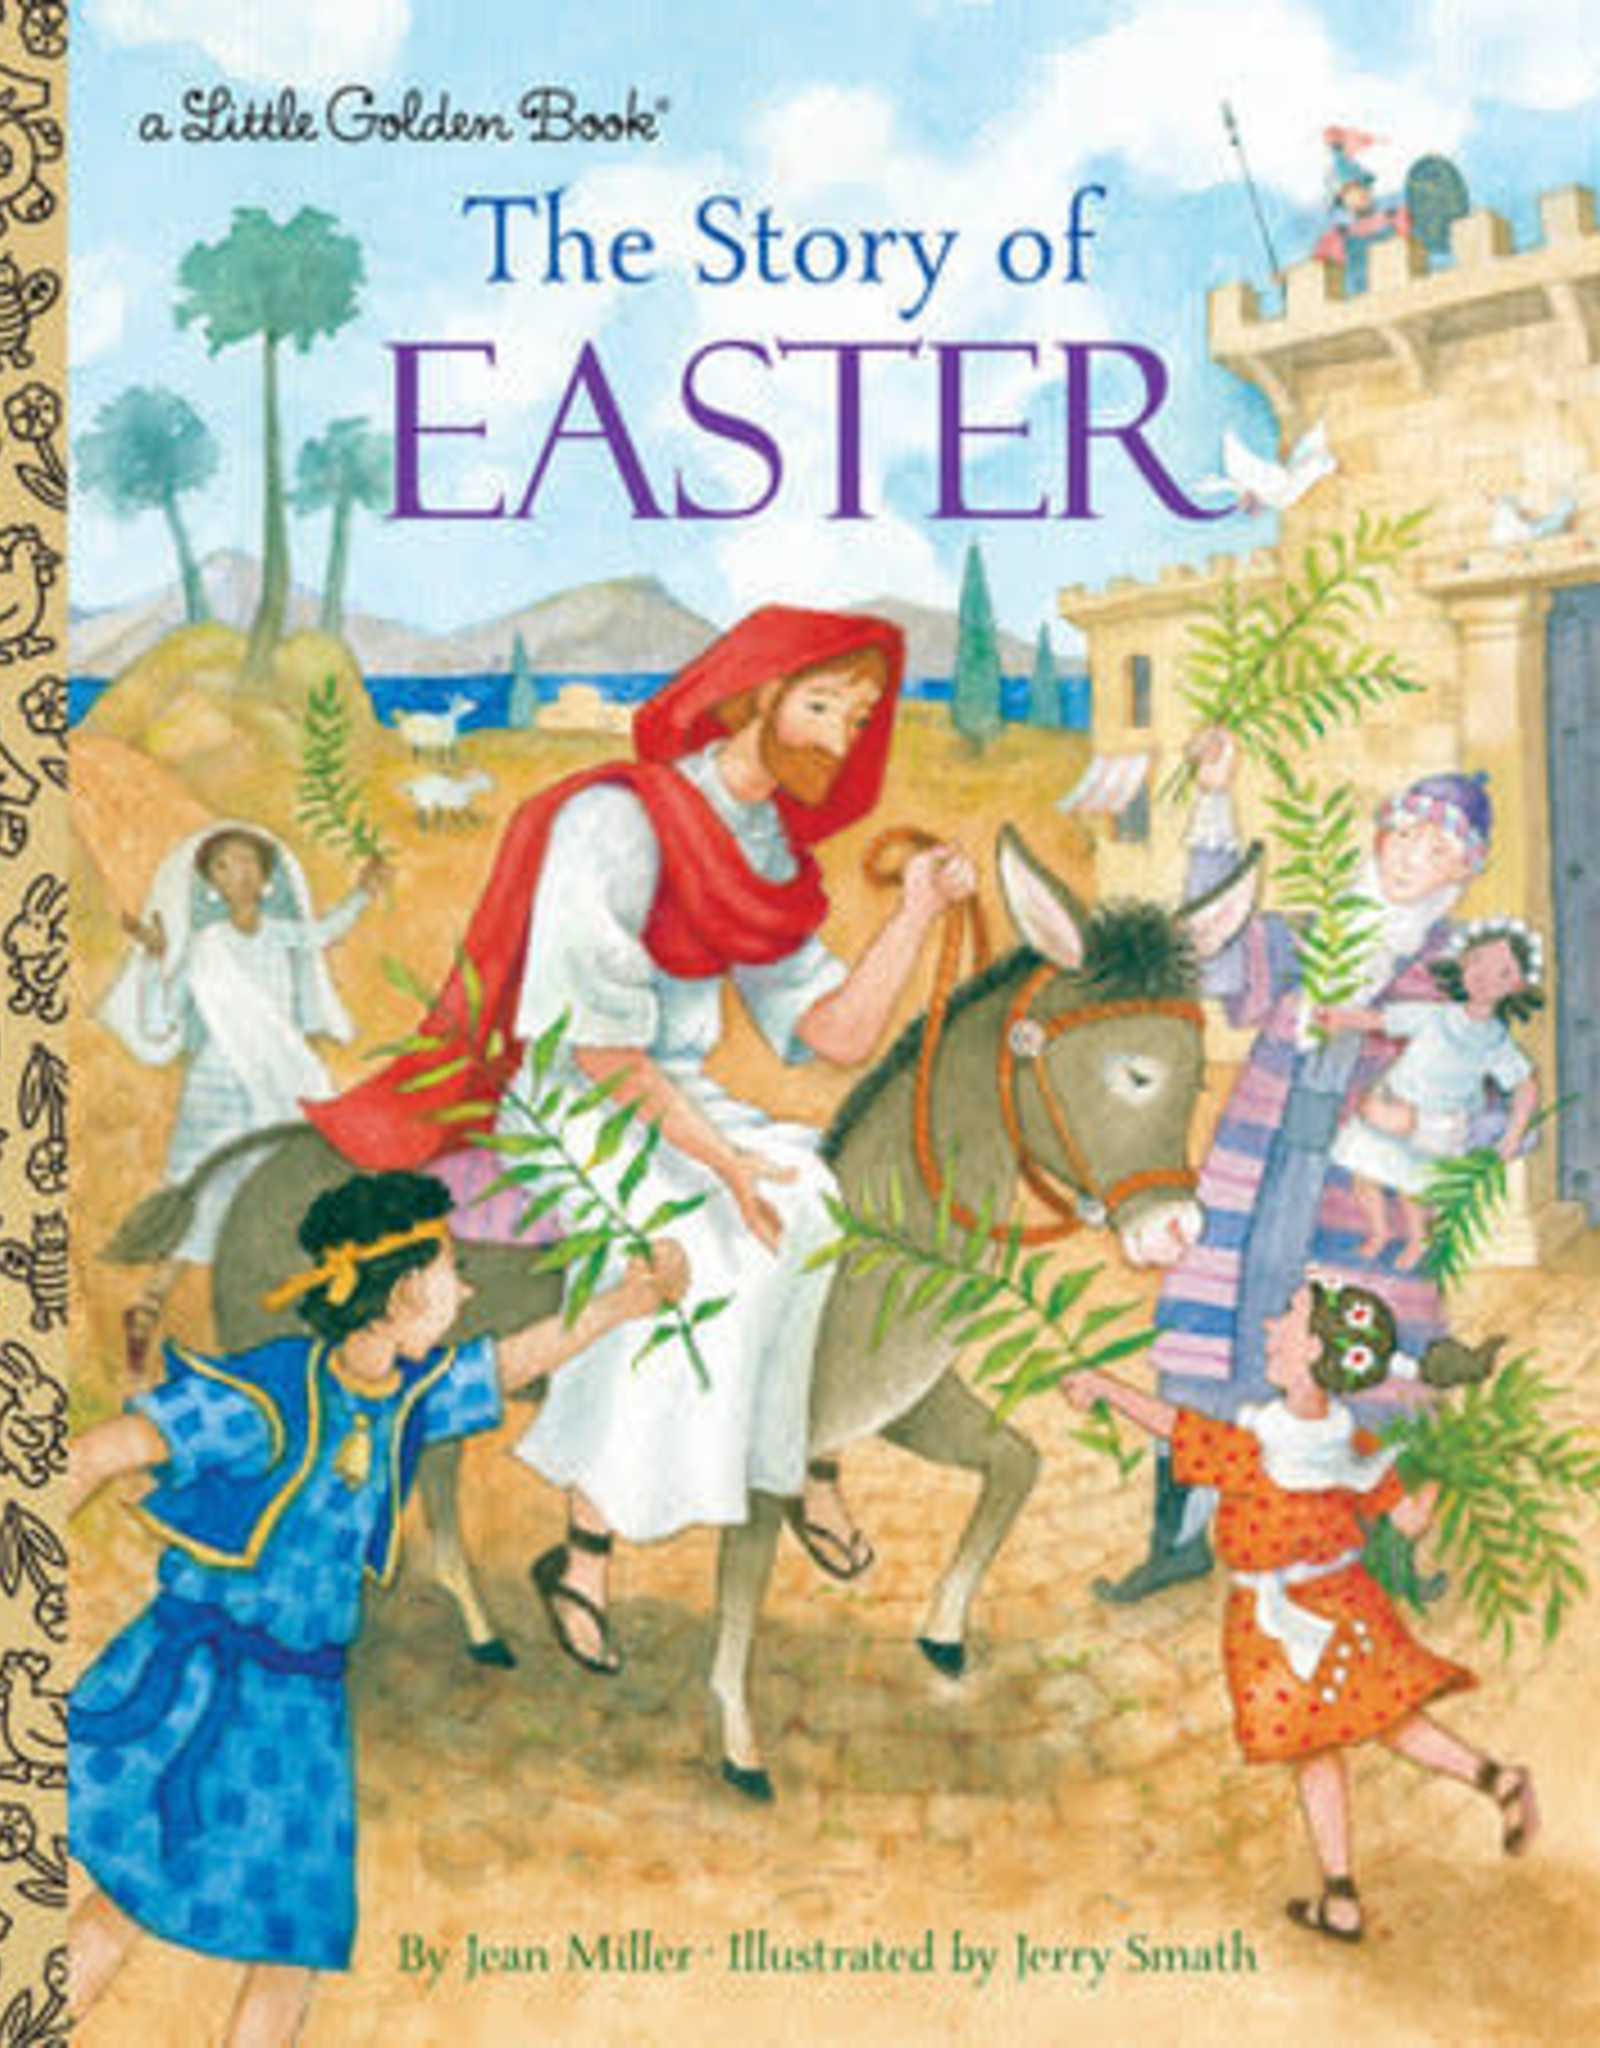 Penguin Random House LGB The Story of Easter